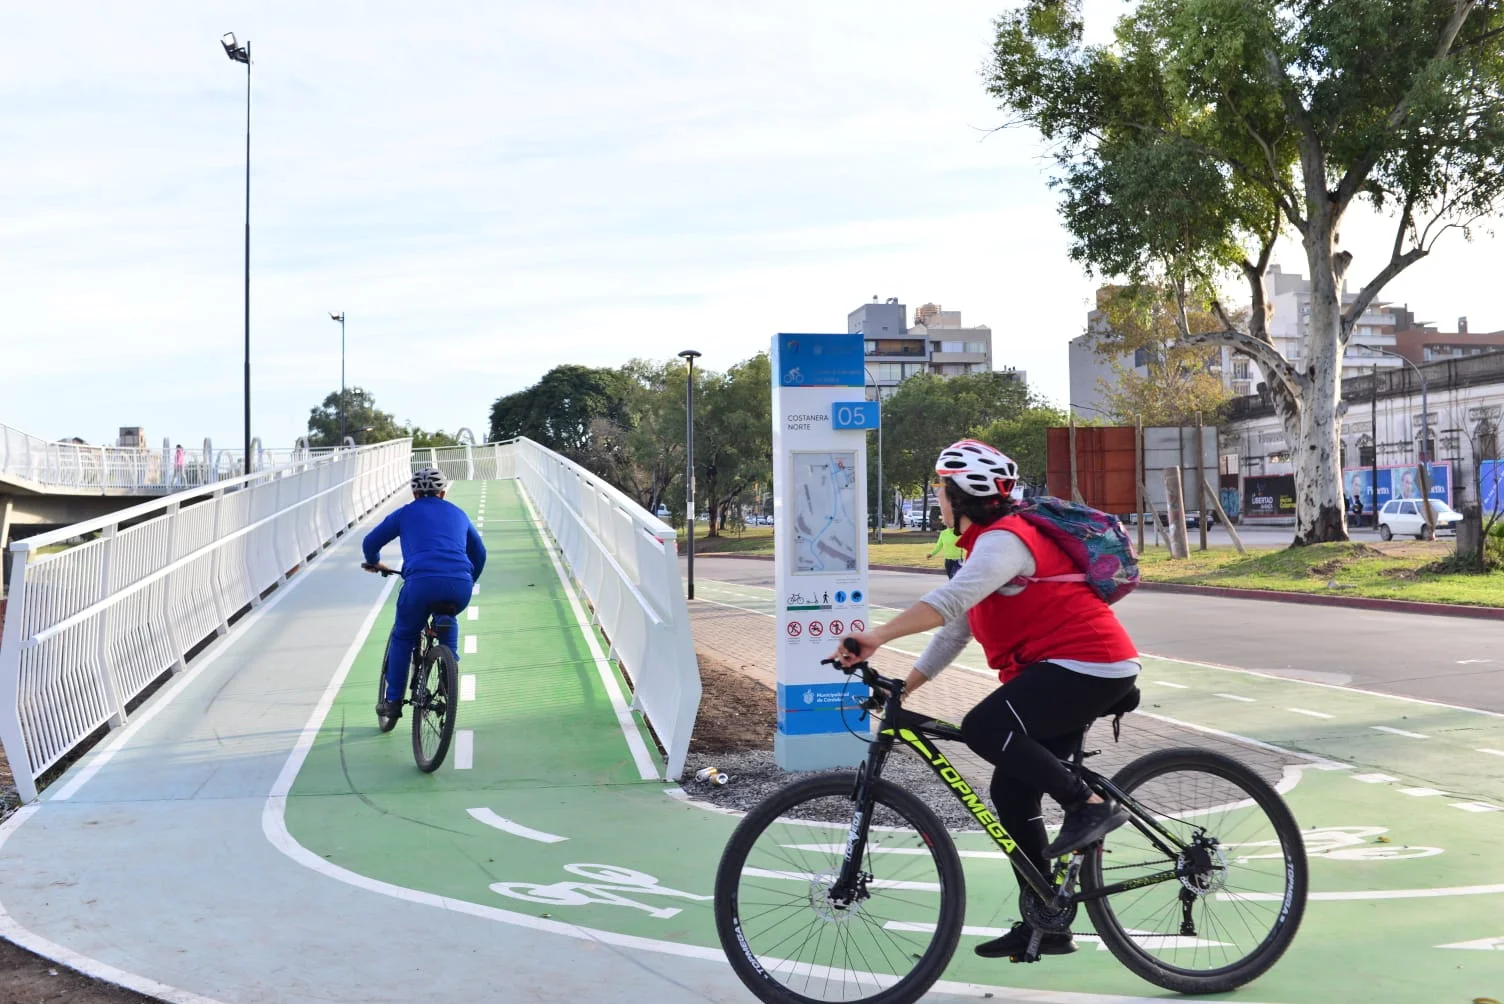 La primer ciclovía elevada del país se inauguró en Córdoba Capital